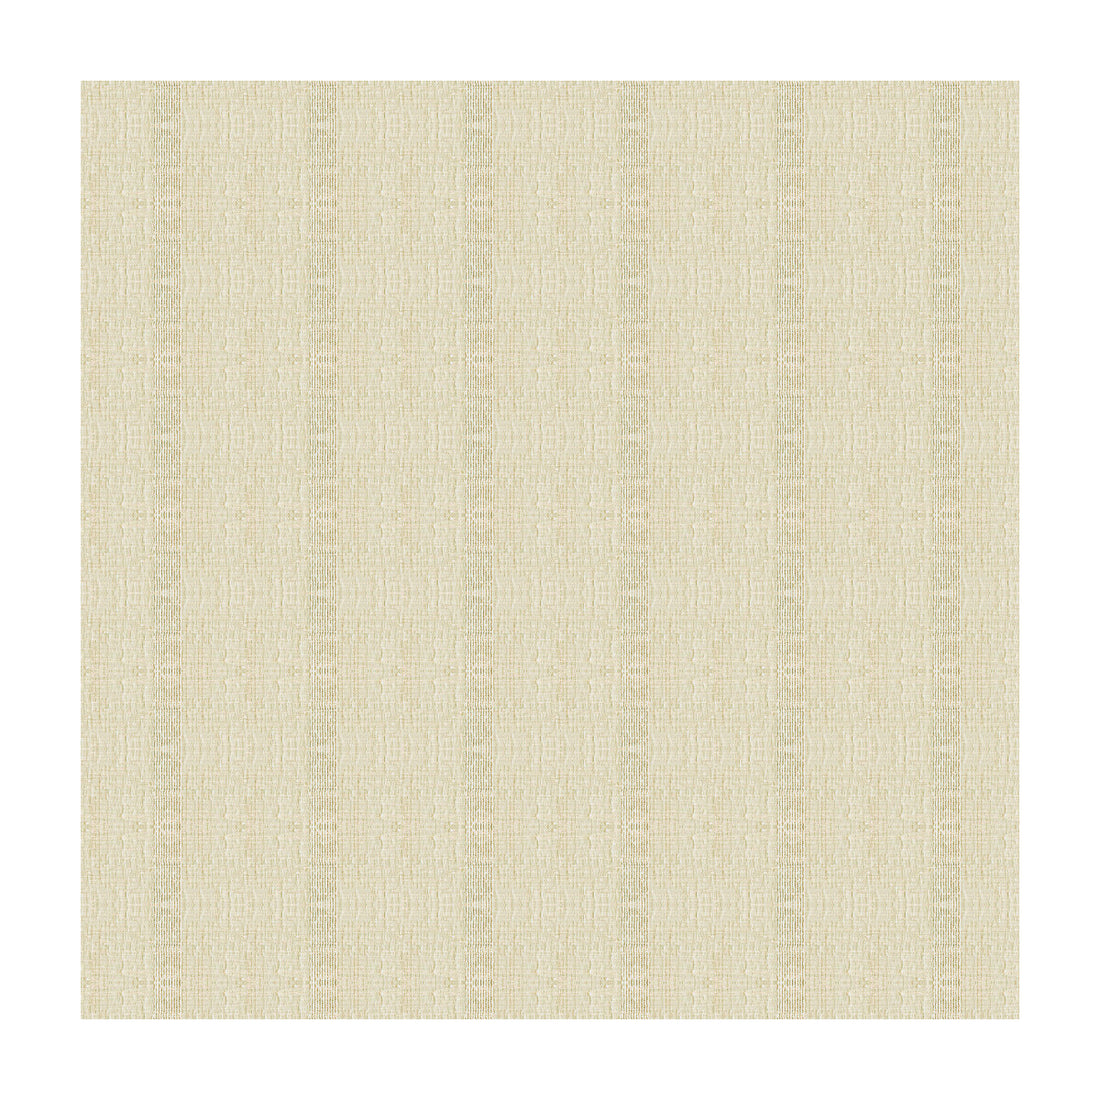 Kravet Basics fabric in 4115-1116 color - pattern 4115.1116.0 - by Kravet Basics